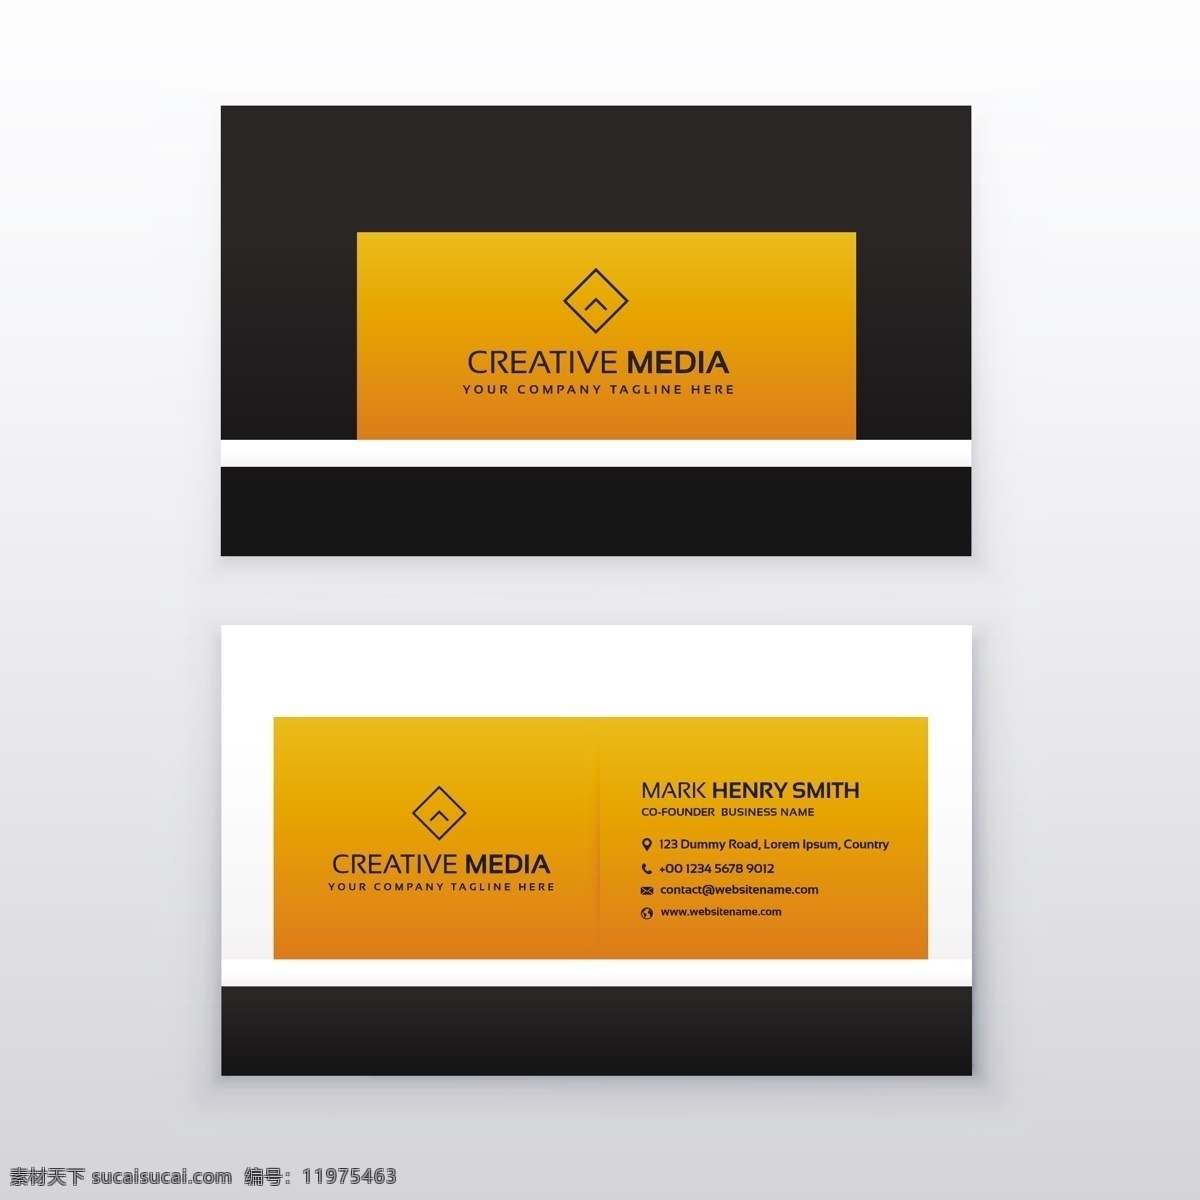 黄色 黑色 公司 名片设计 商标 名片 商务 抽象 卡片 模板 办公室 布局 展示 文具 联系 创意 品牌 现代 印刷 身份